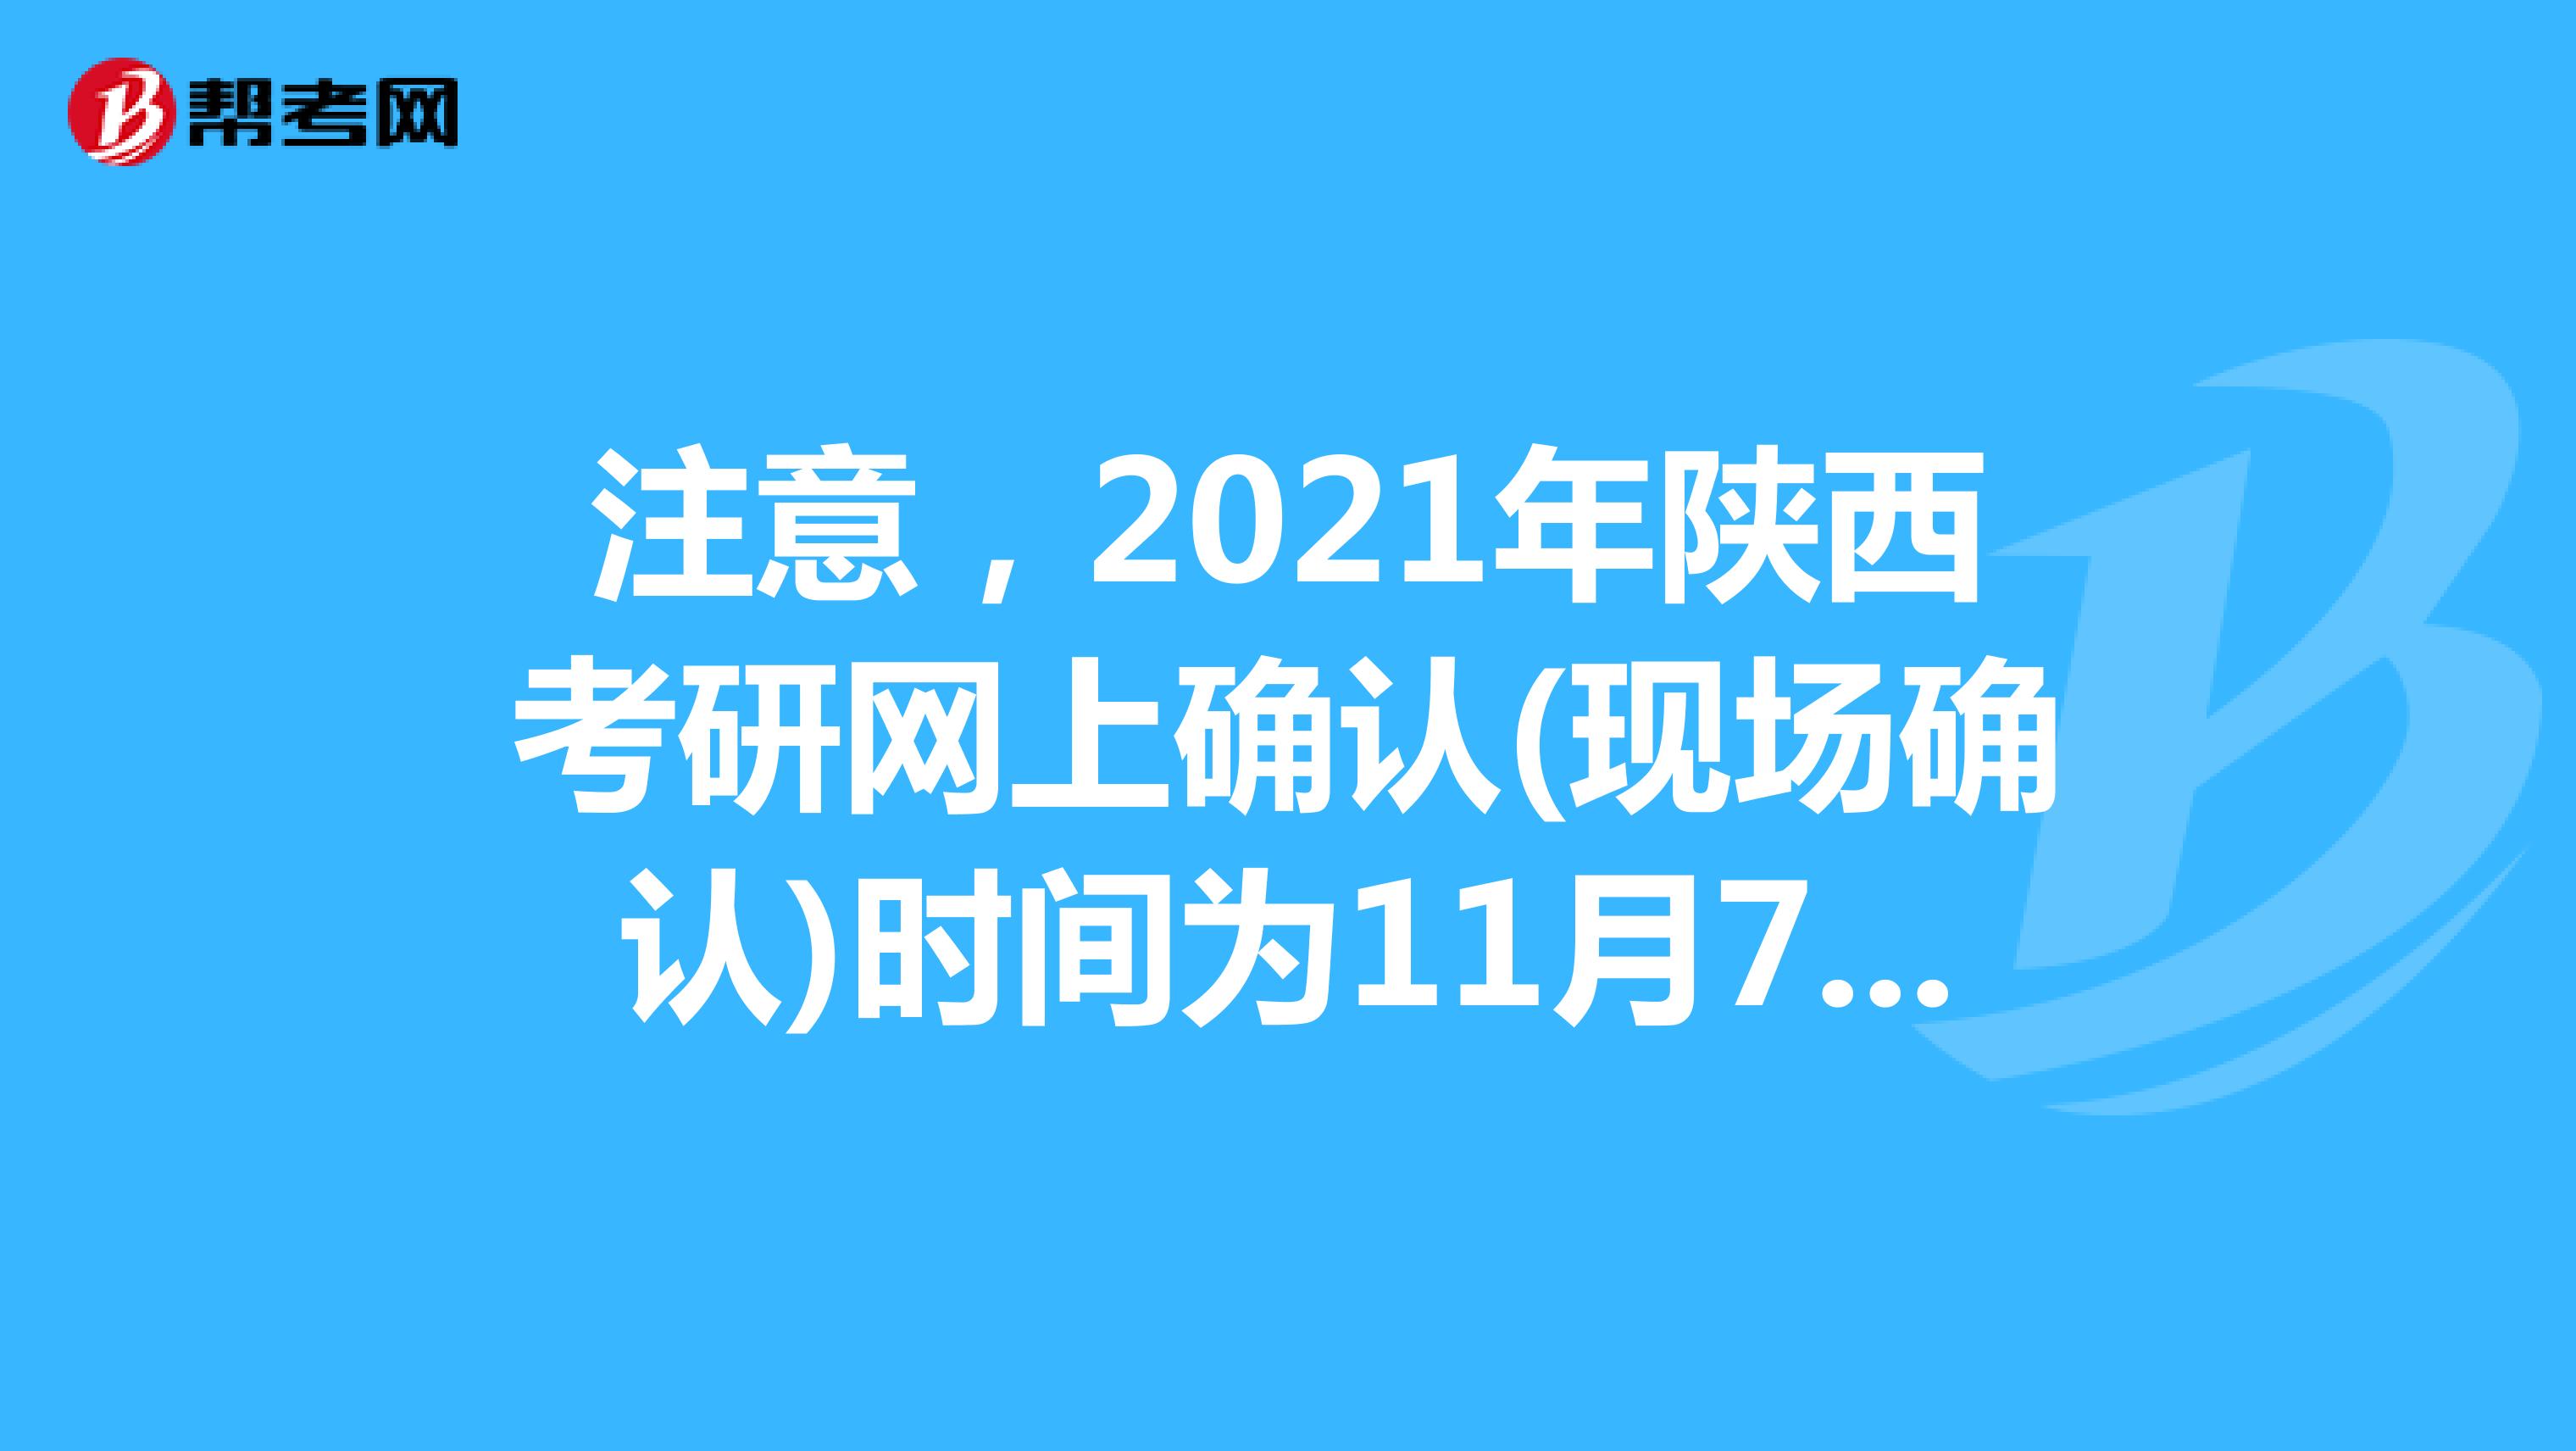 注意，2021年陕西考研网上确认(现场确认)时间为11月7日前